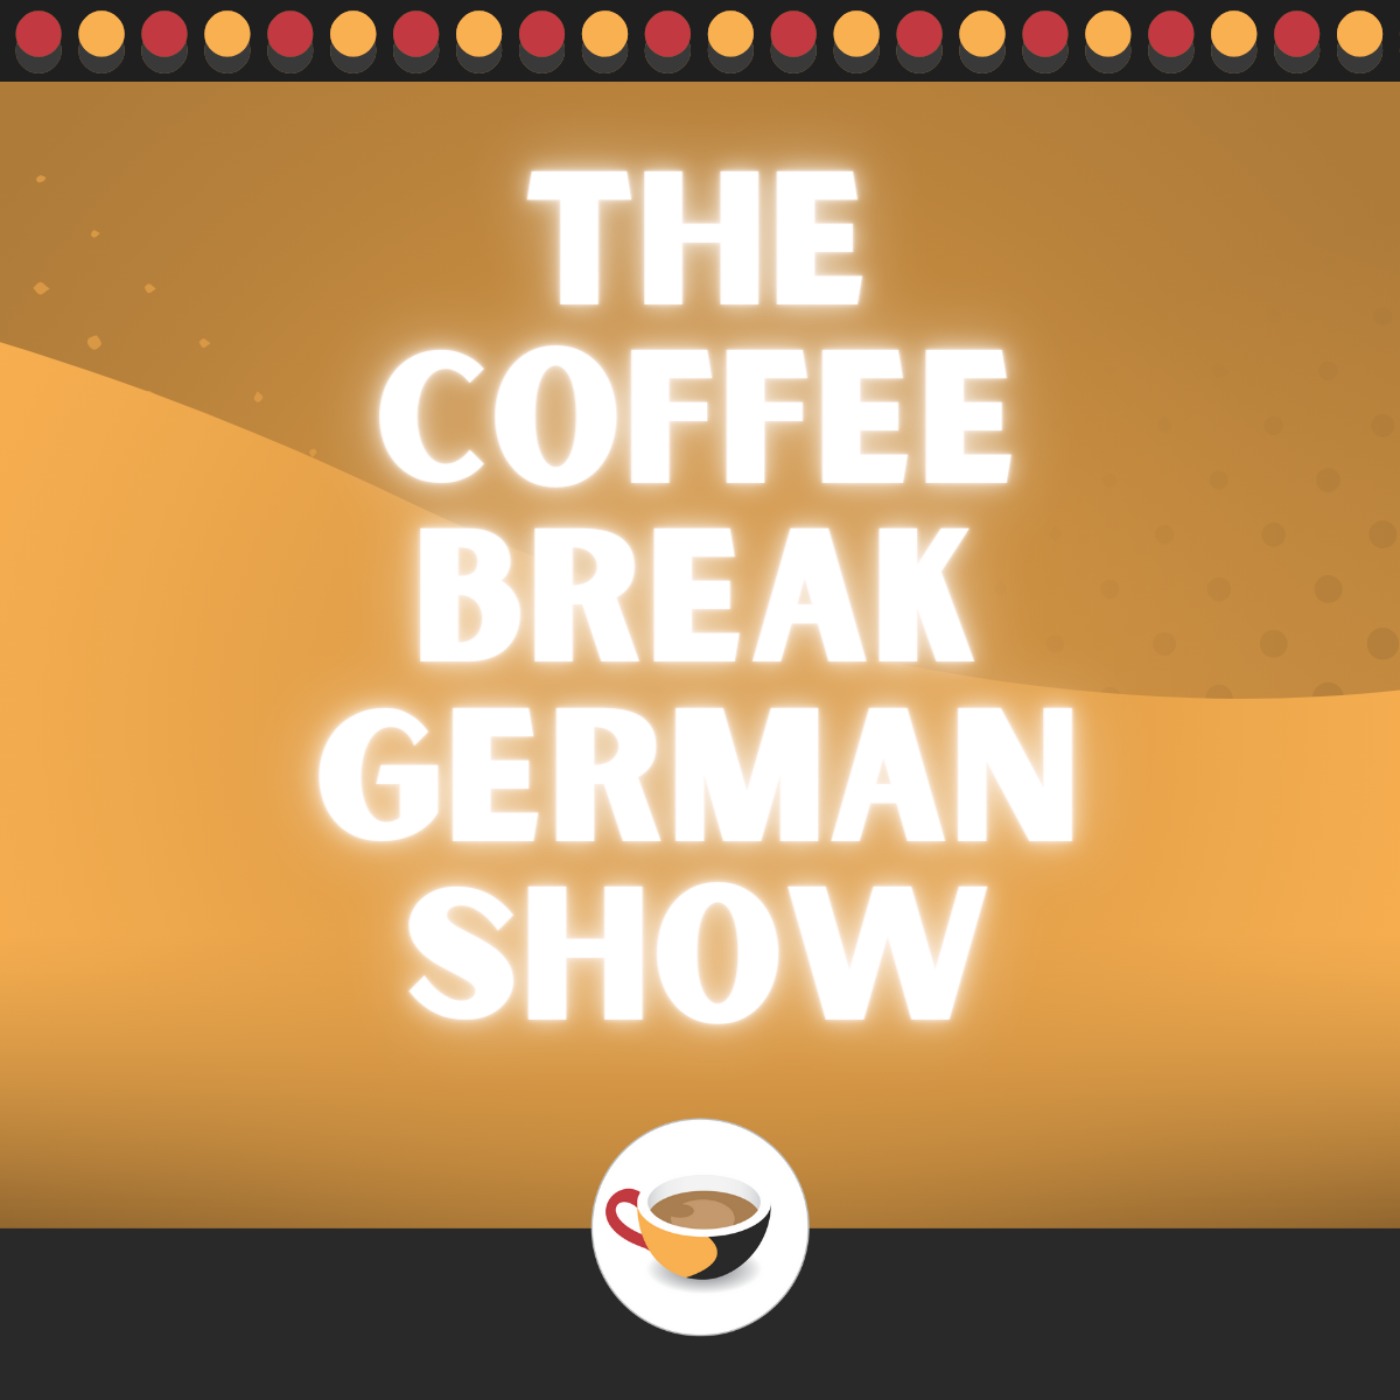 ‘Nein’, ‘nicht’ and ‘kein’ - Negation in German | The Coffee Break German Show 1.09